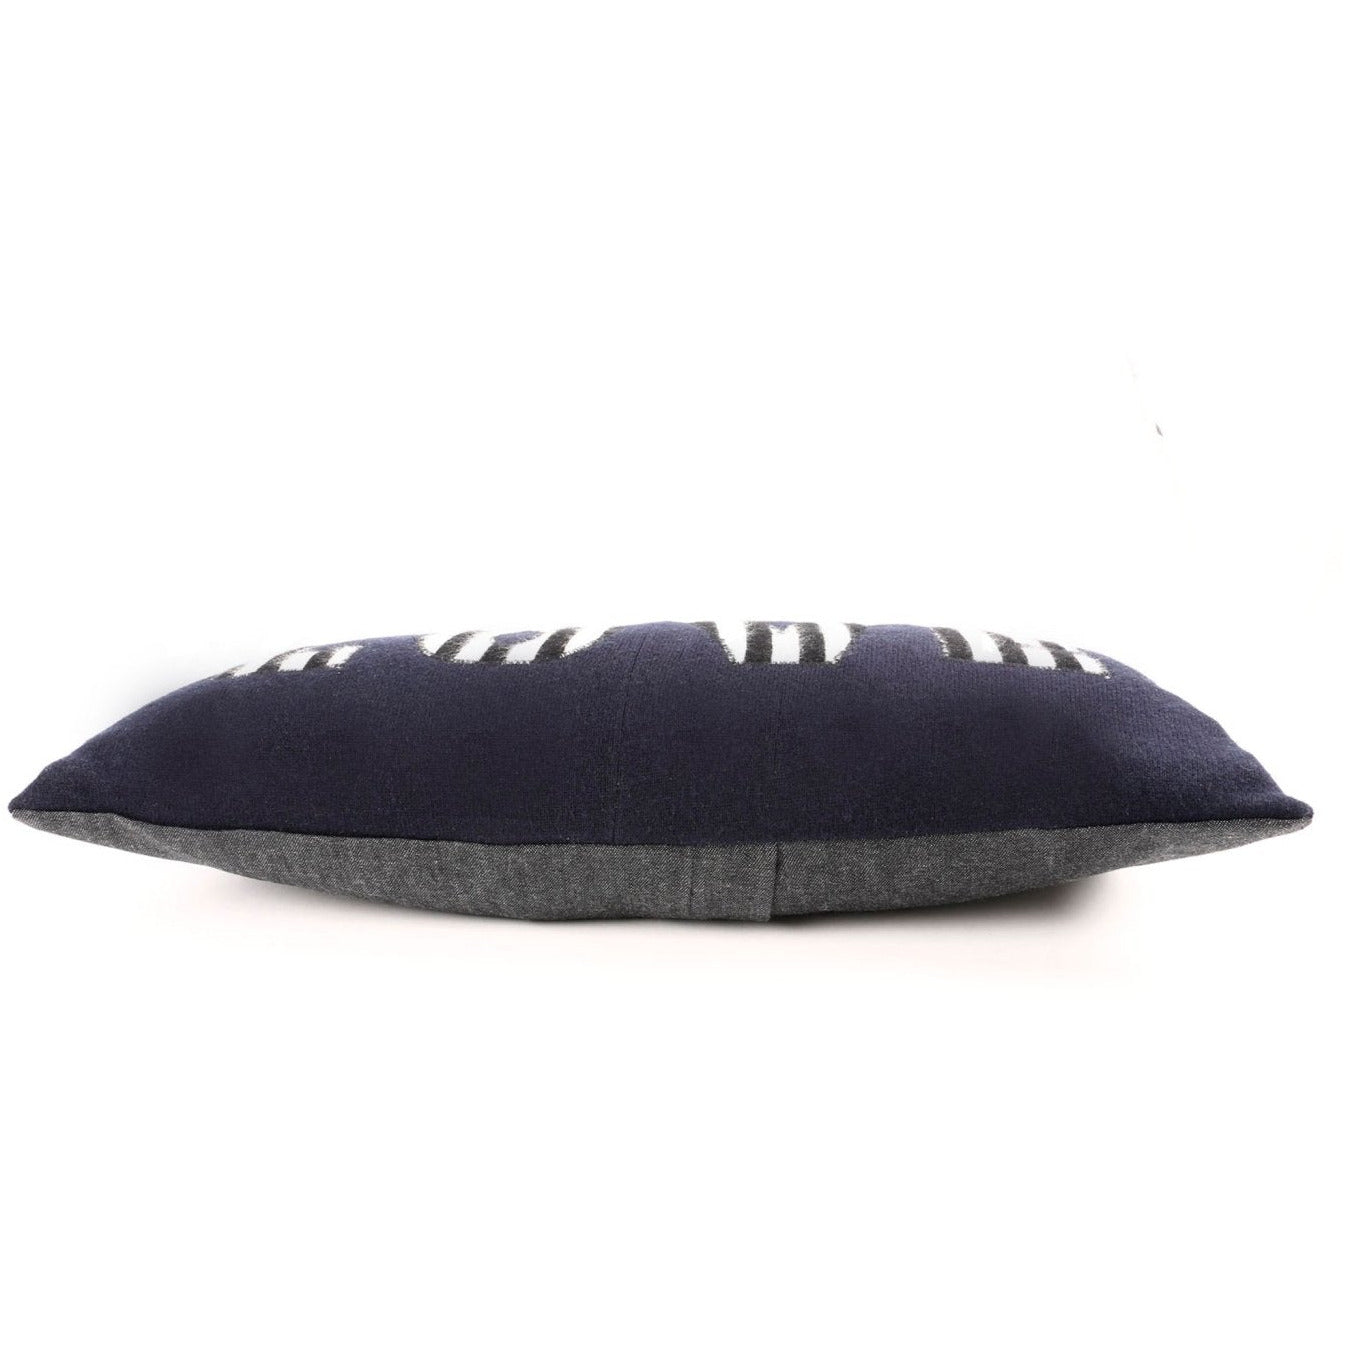 Navy LOVE Cushion - Crumpet Chowk